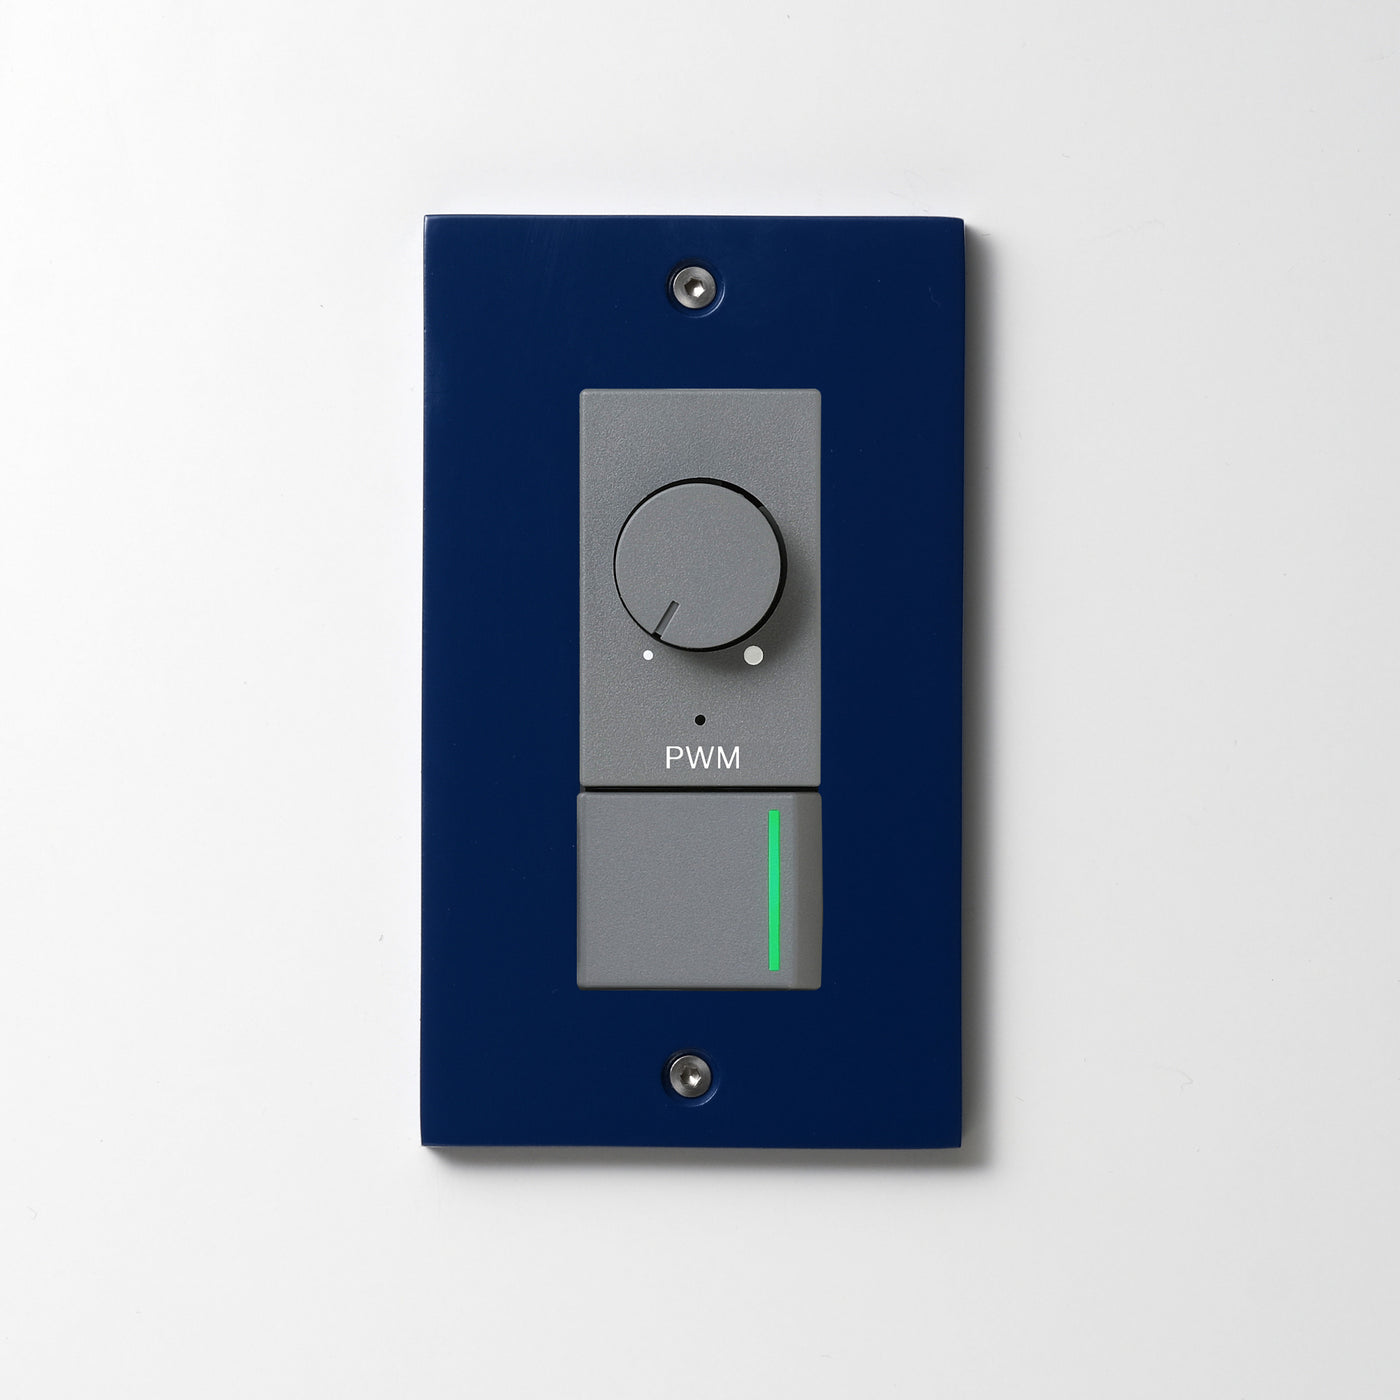 アルミダイキャスト（ブルー）プレート  <br>+ NK PWM制御方式(1ch)ライトコントロール＋片切、3路ガイドランプ（グリーン）スイッチ　 グレー